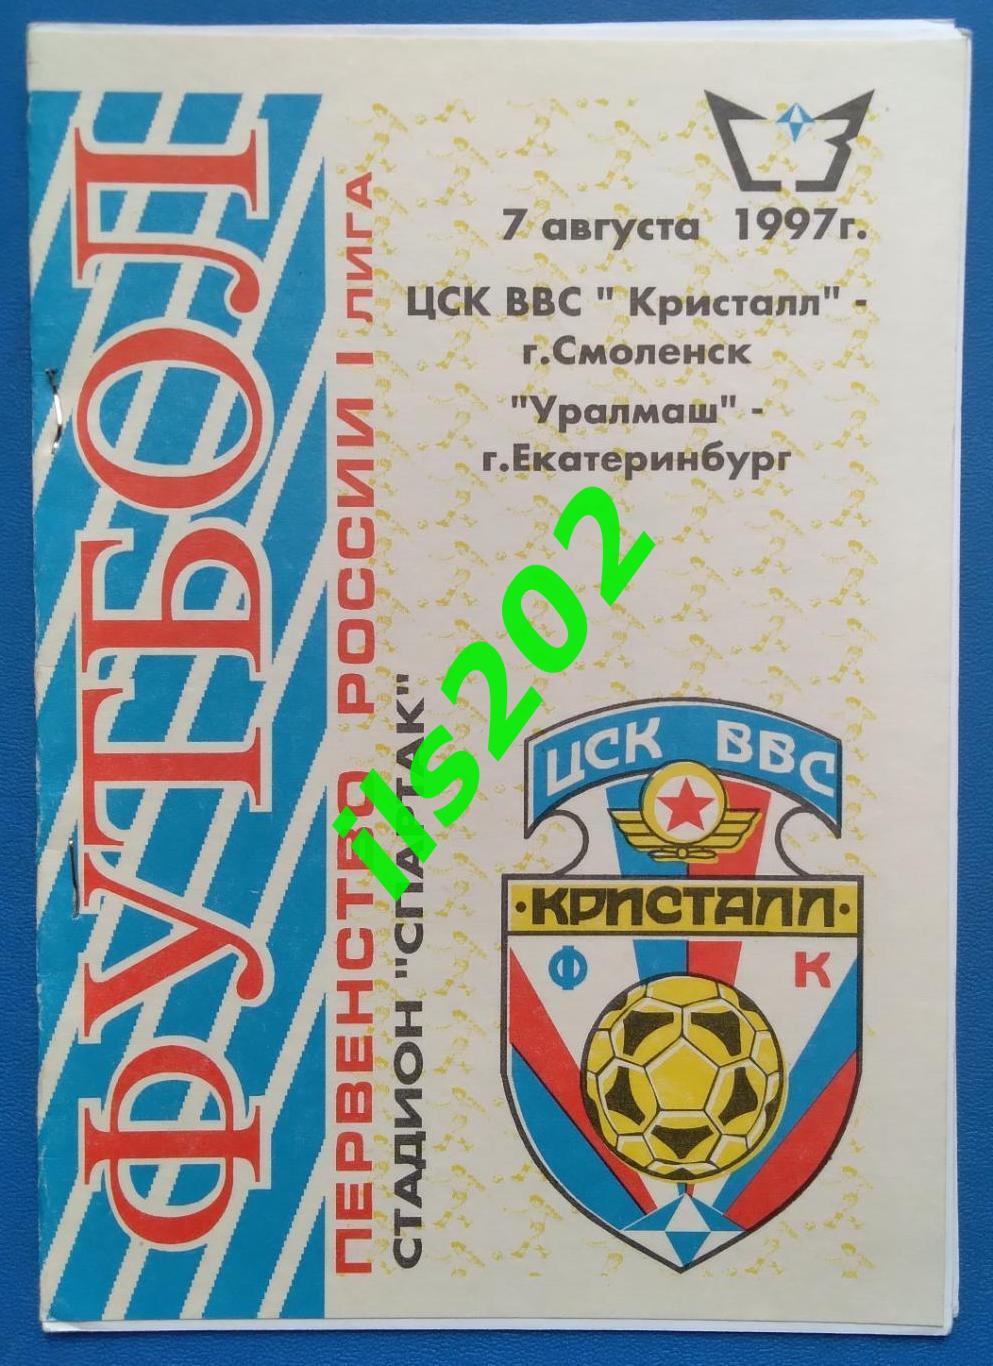 ЦСК ВВС Кристалл Смоленск - Уралмаш Екатеринбург 1997